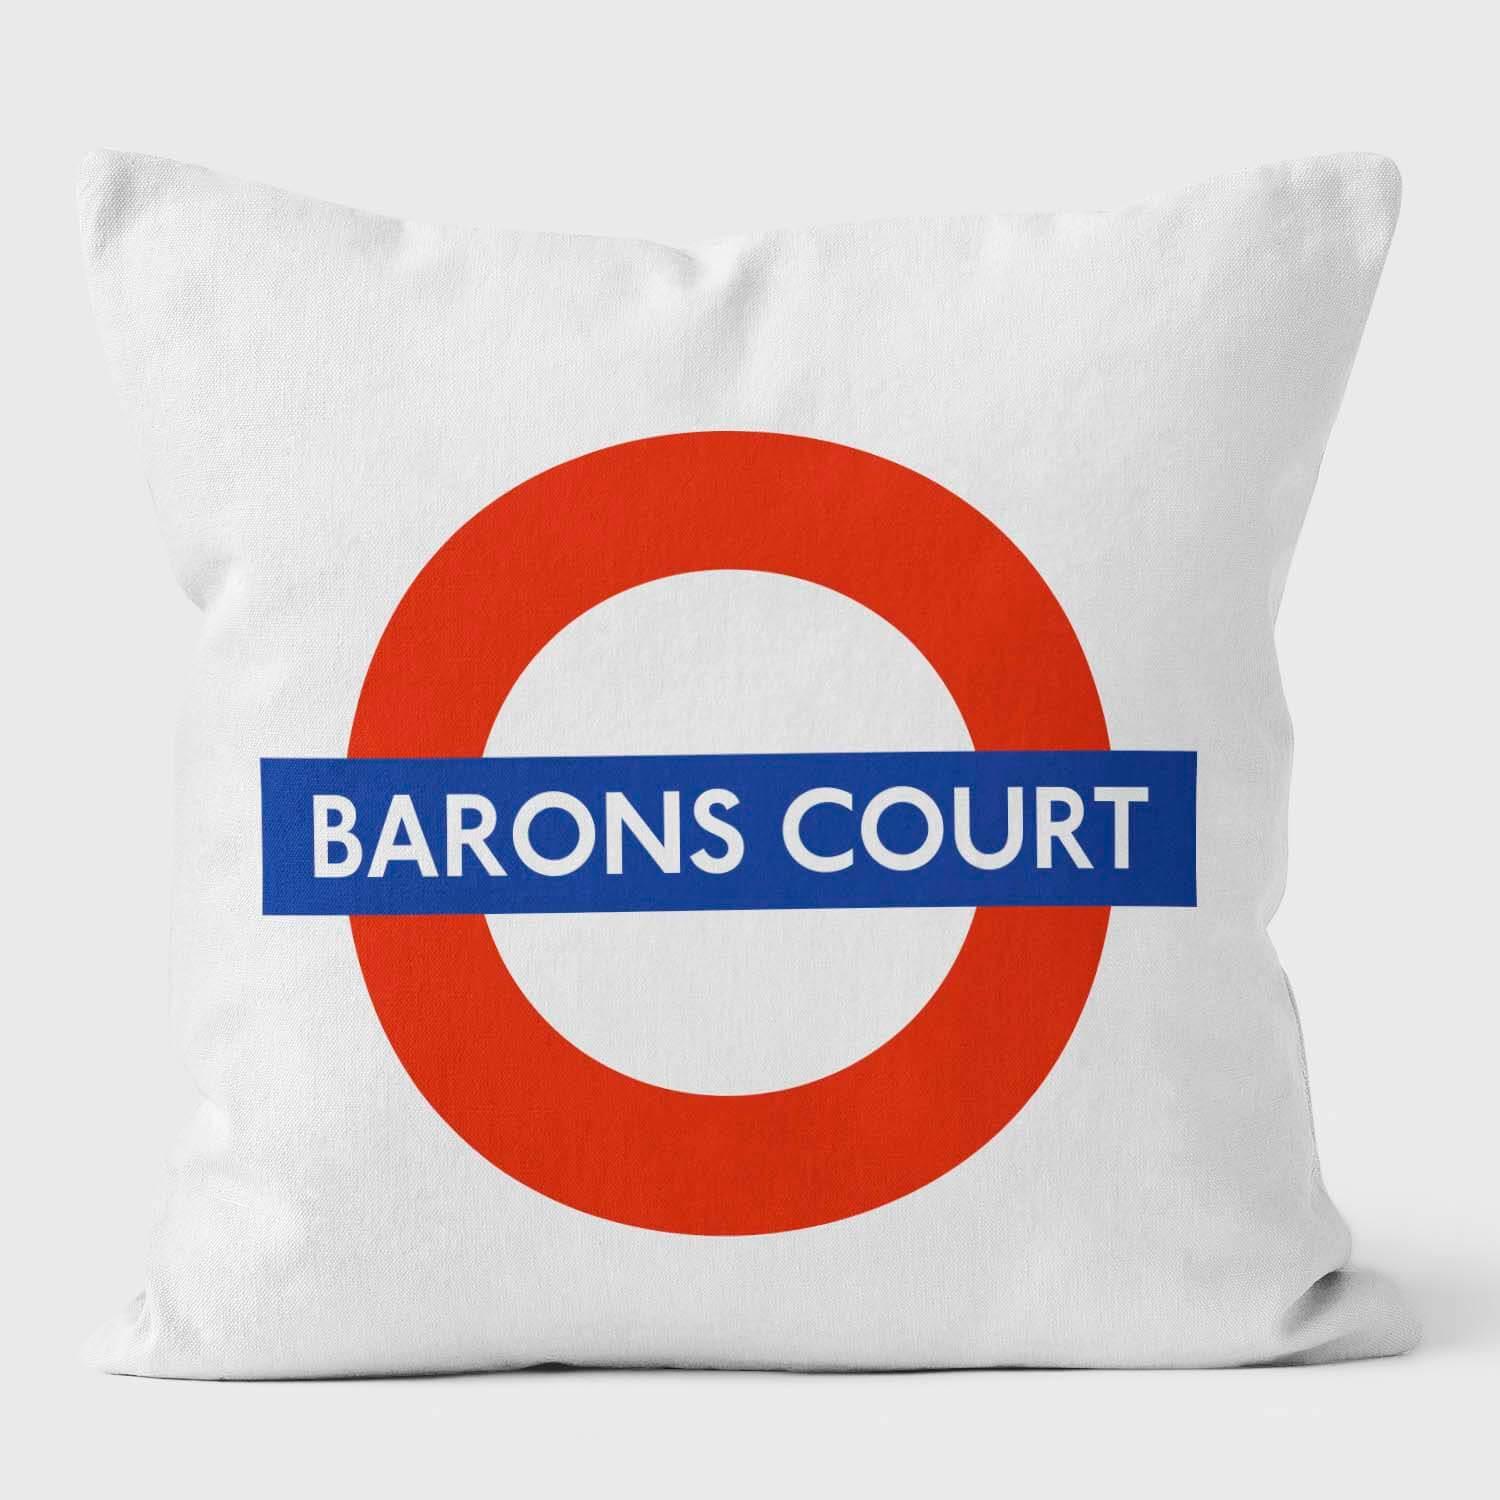 Barons Court London Underground Tube Station Roundel Cushion - Handmade Cushions UK - WeLoveCushions